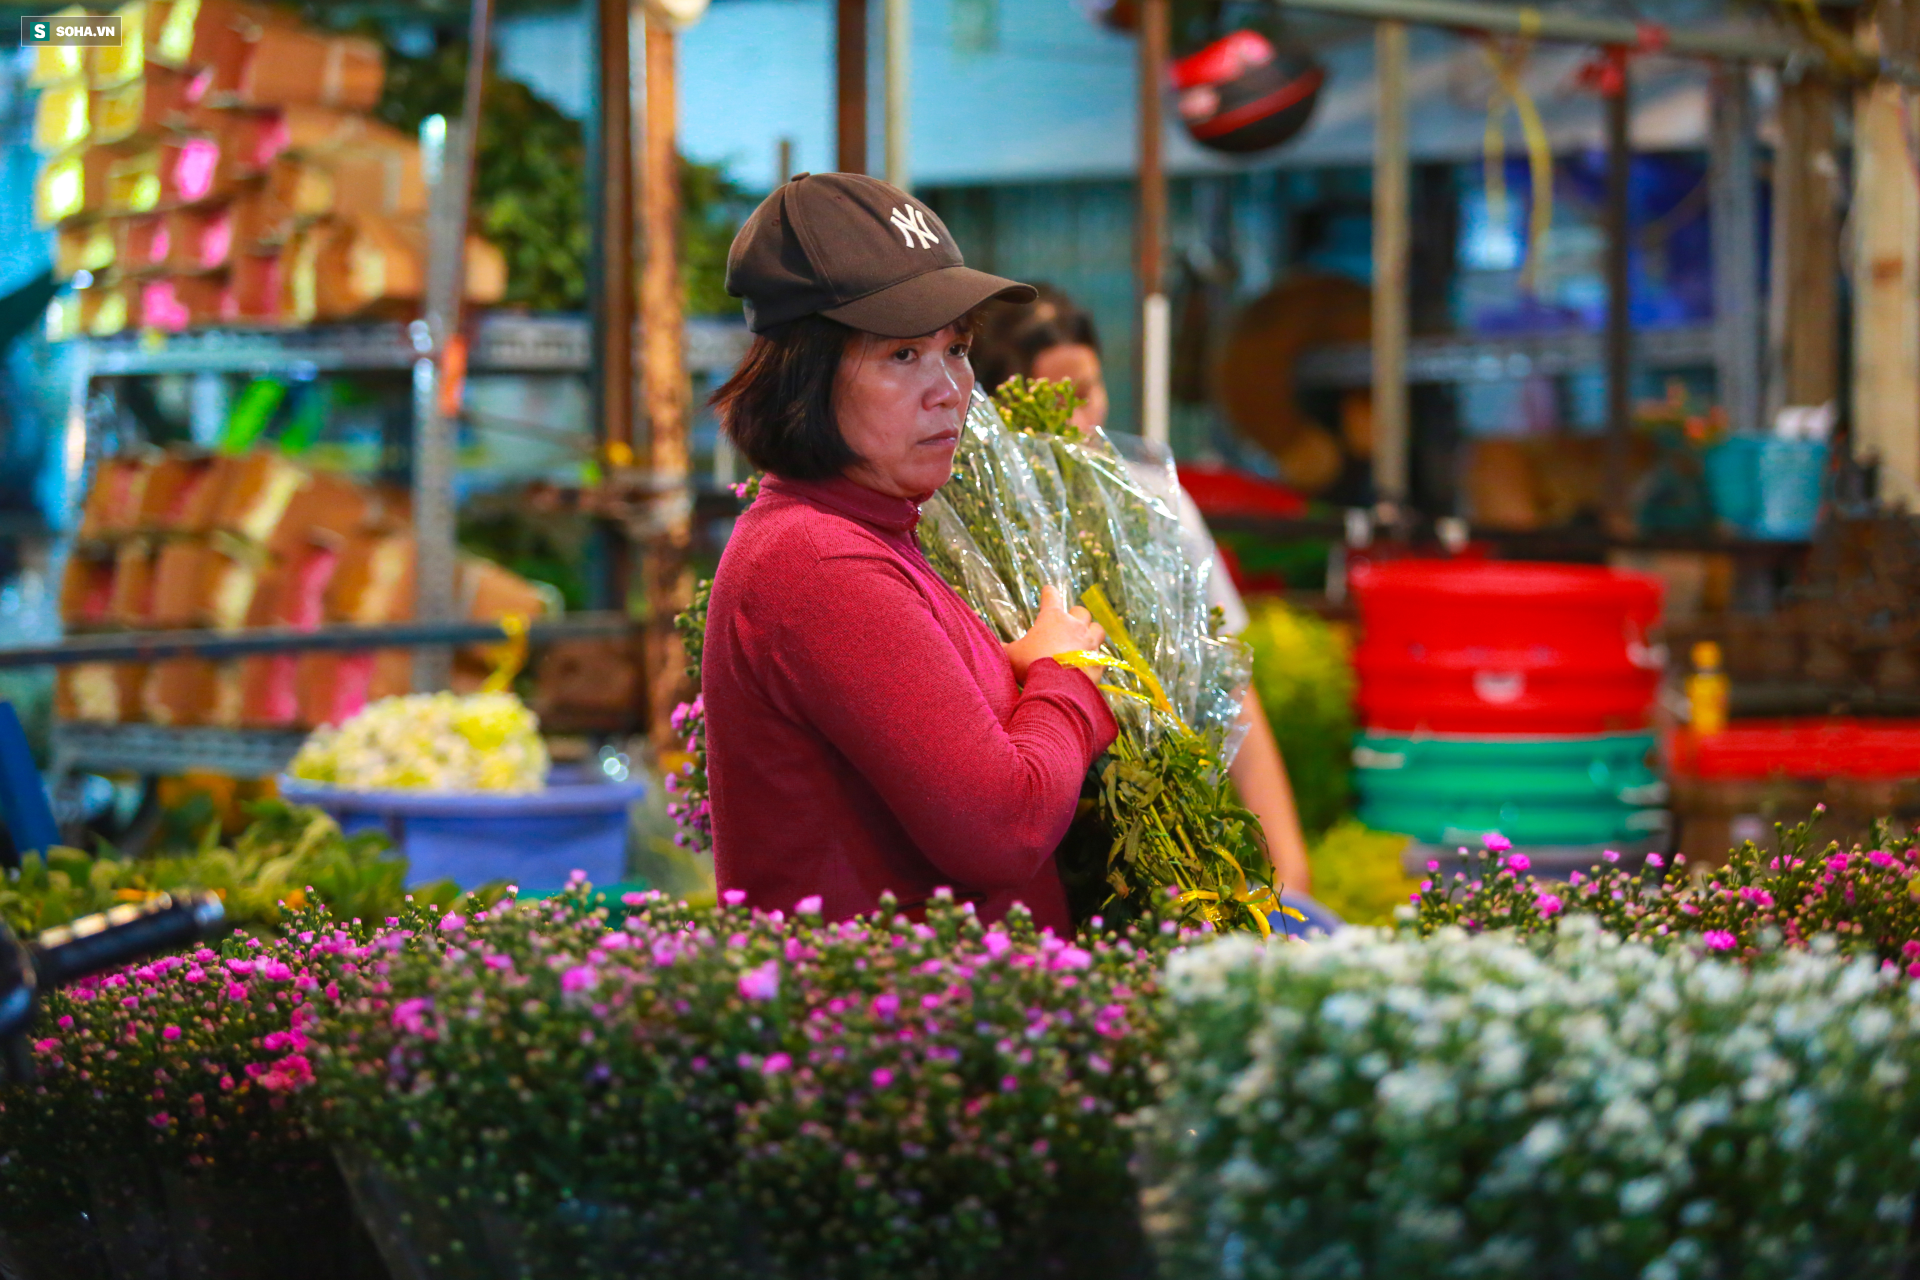 Chợ hoa 30 năm không ngủ ở Sài Gòn nhộn nhịp lúc 2 giờ sáng đón ngày 8/3 - Ảnh 11.